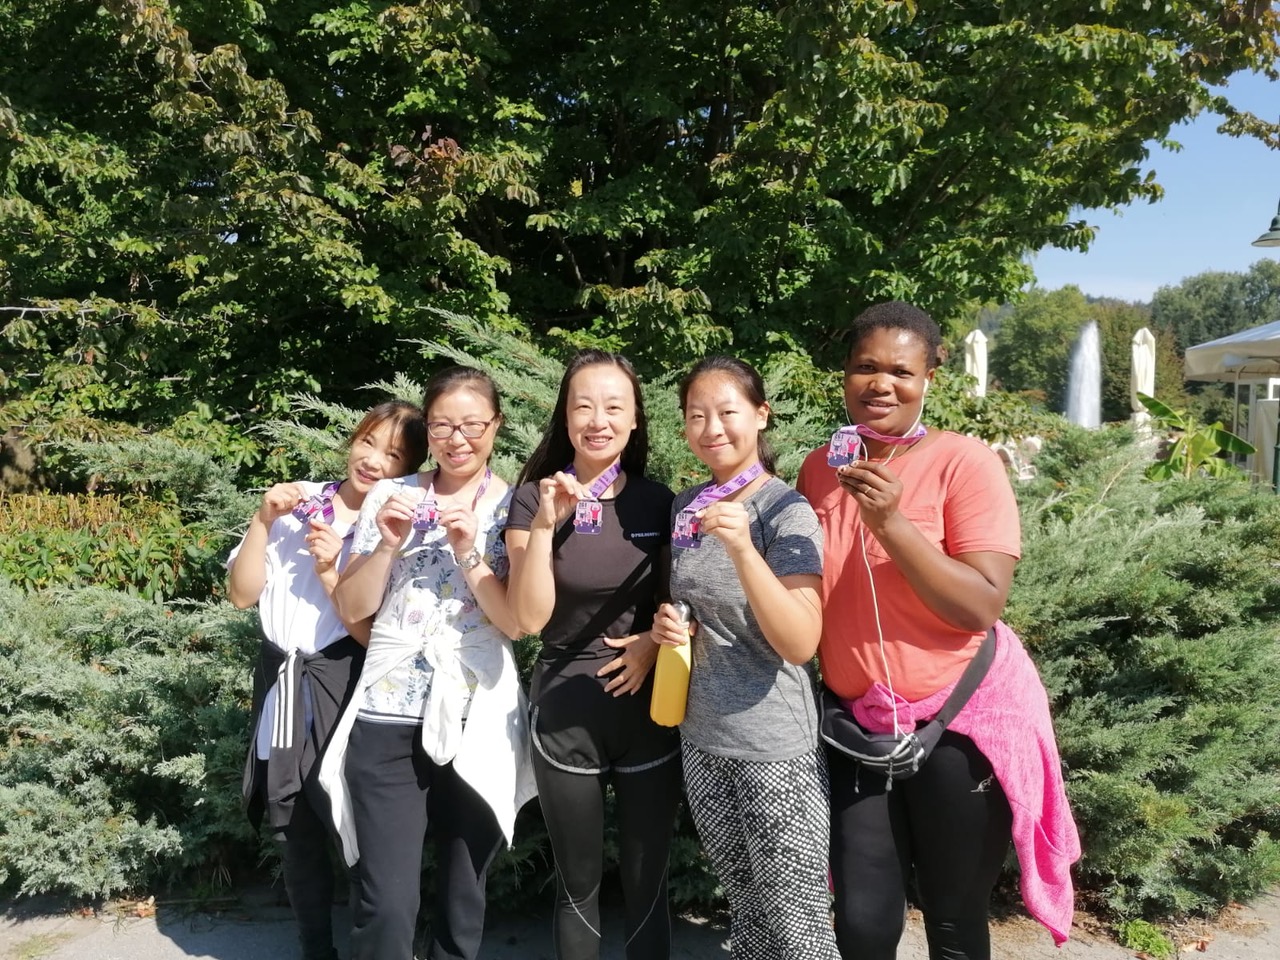 Gruppe von Frauen unterschiedlicher Ethnizität, Mitglieder der 261 Fearless Laufgruppe, zeigen stolz ihre Medaillen in einem parkähnlichen Gelände